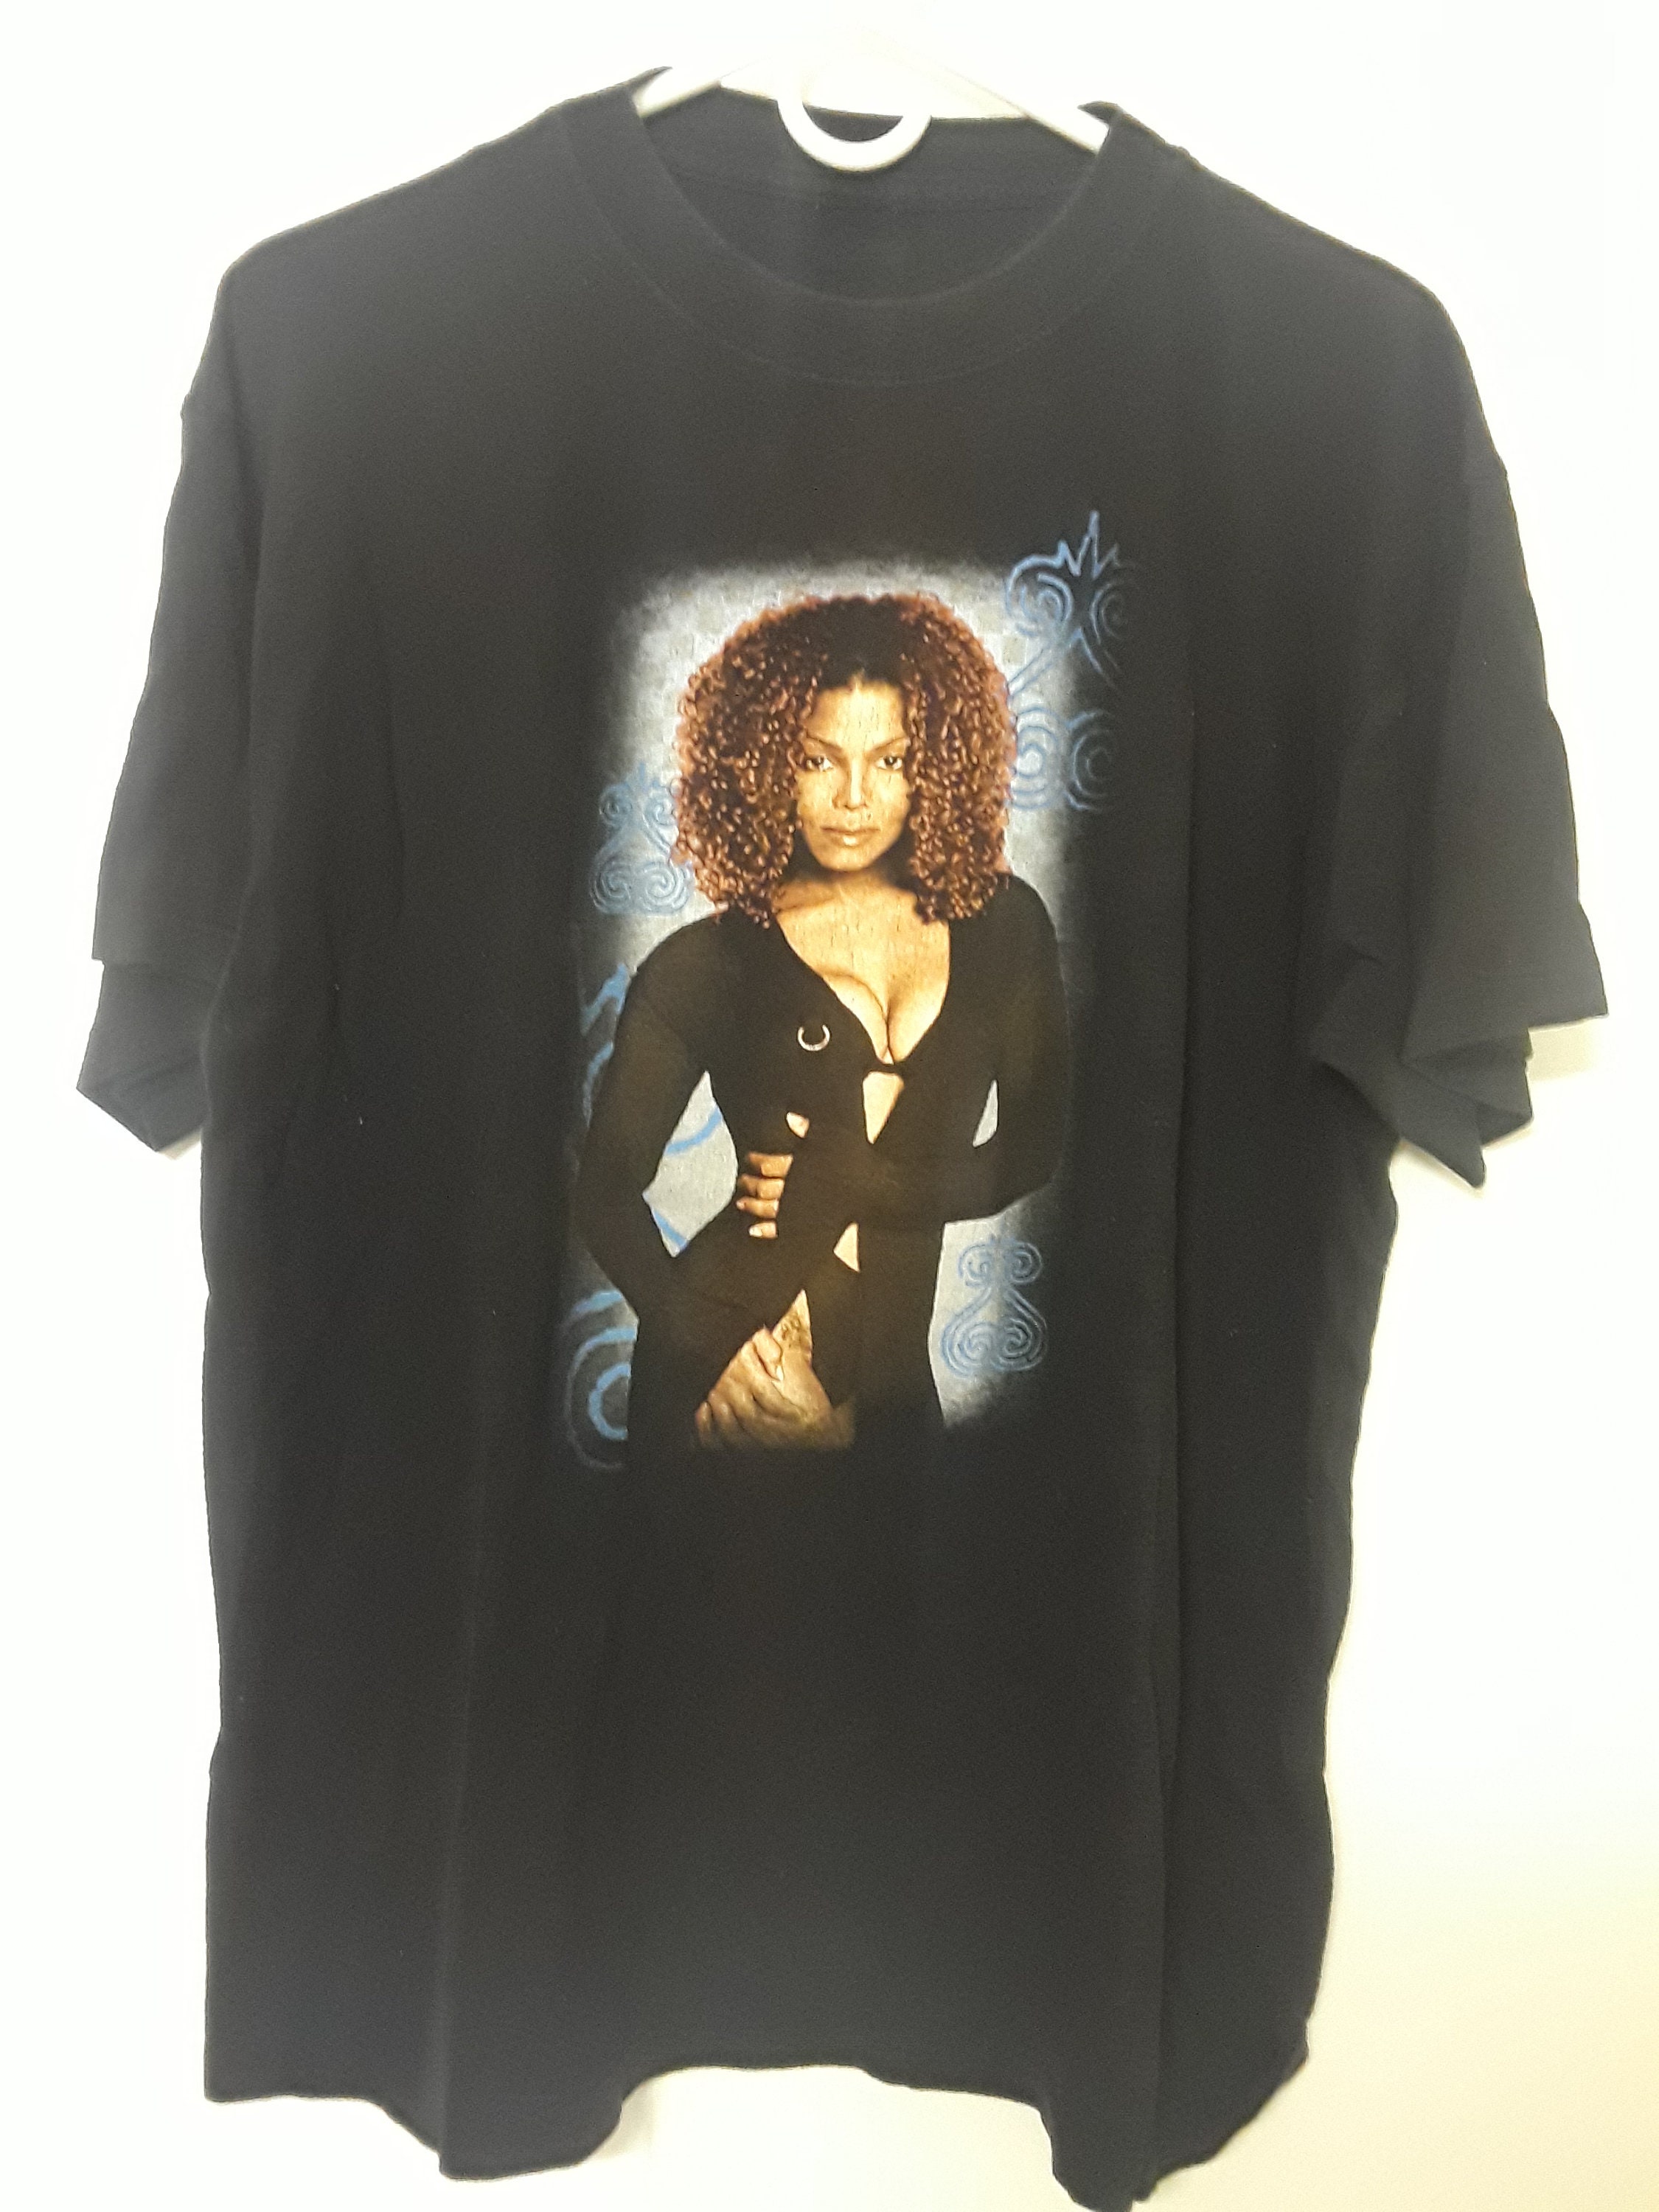 『入手困難』ジャネット・ジャクソン 1998 ワールドツアー Tシャツ